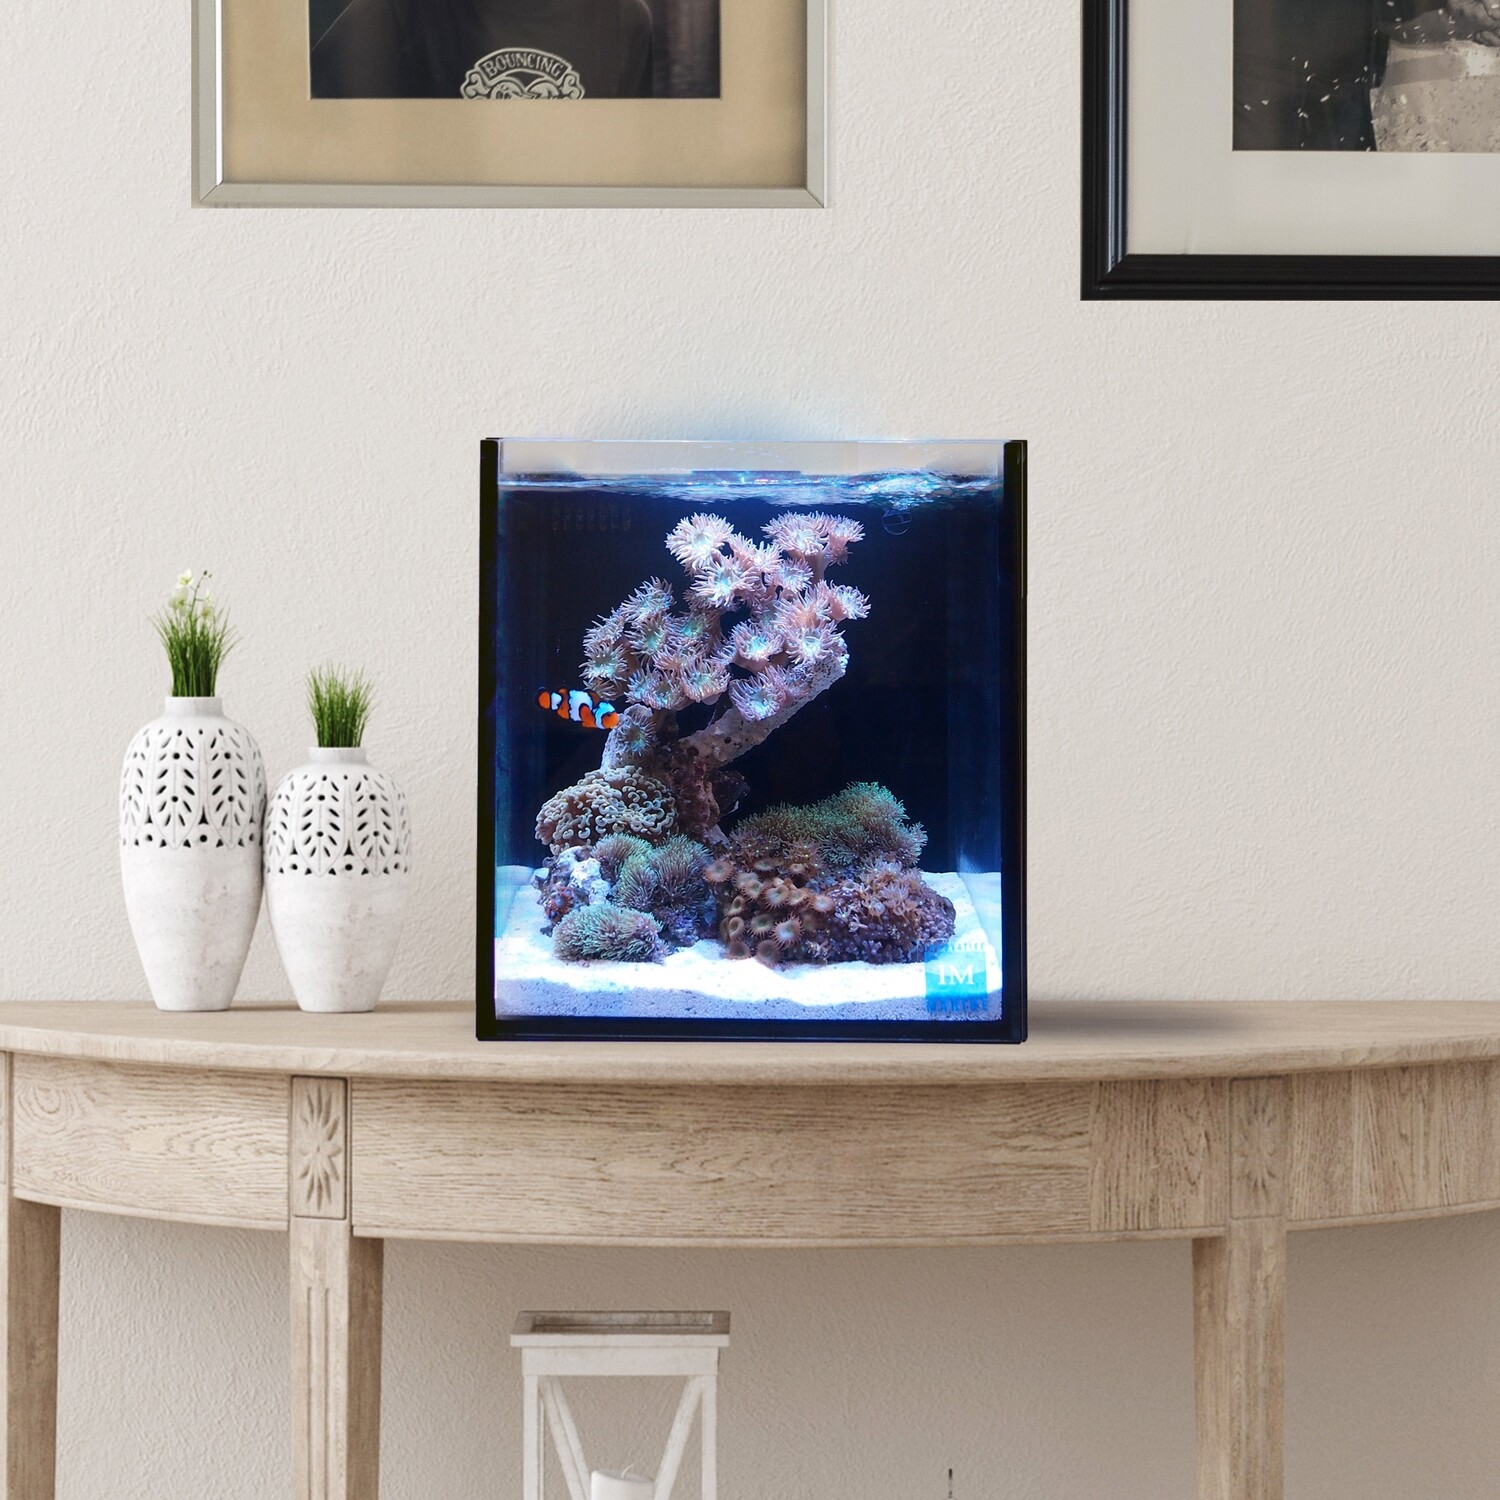 Fusion Pro 2 | 10 AIO Aquarium [Desktop]